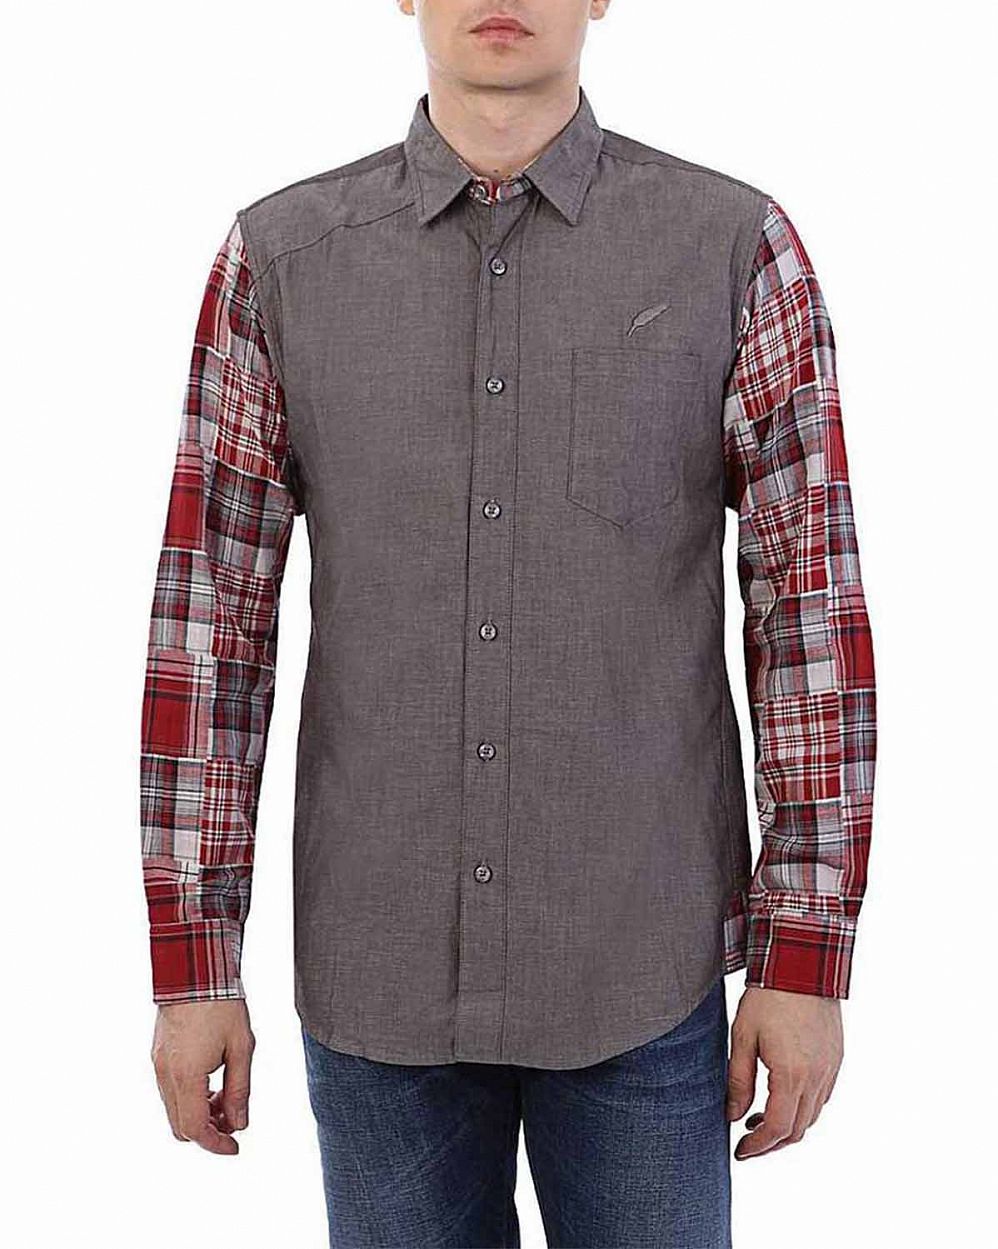 Рубашка мужская с длинным рукавом Publish Brand USA Davert Charcoal отзывы